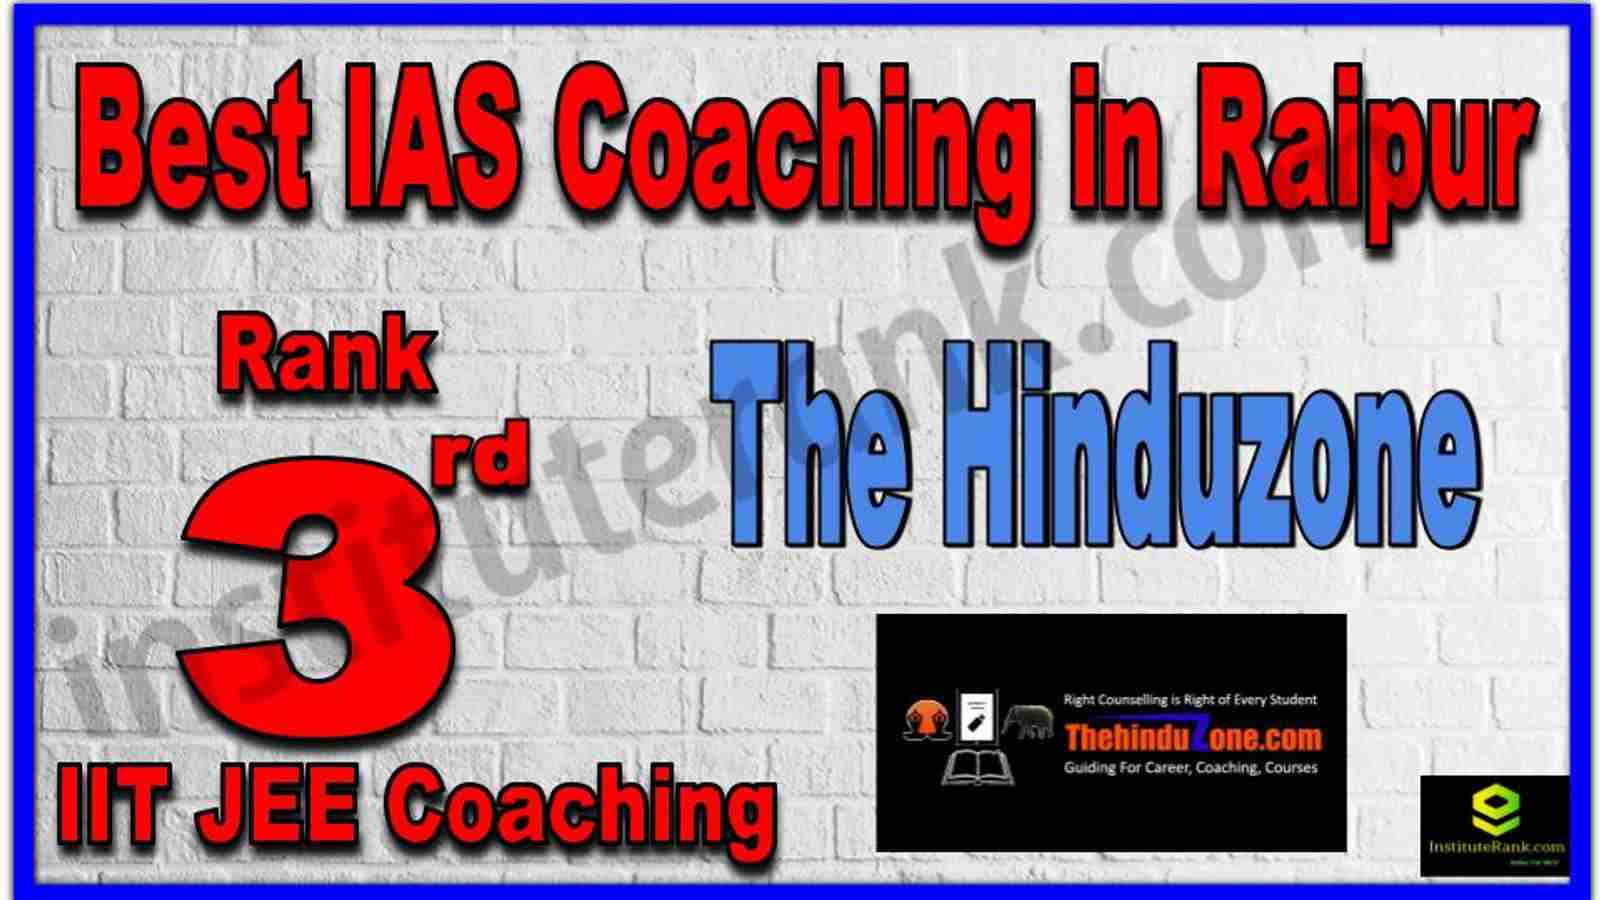 Rank 3rd Best IAS Coaching in Raipur